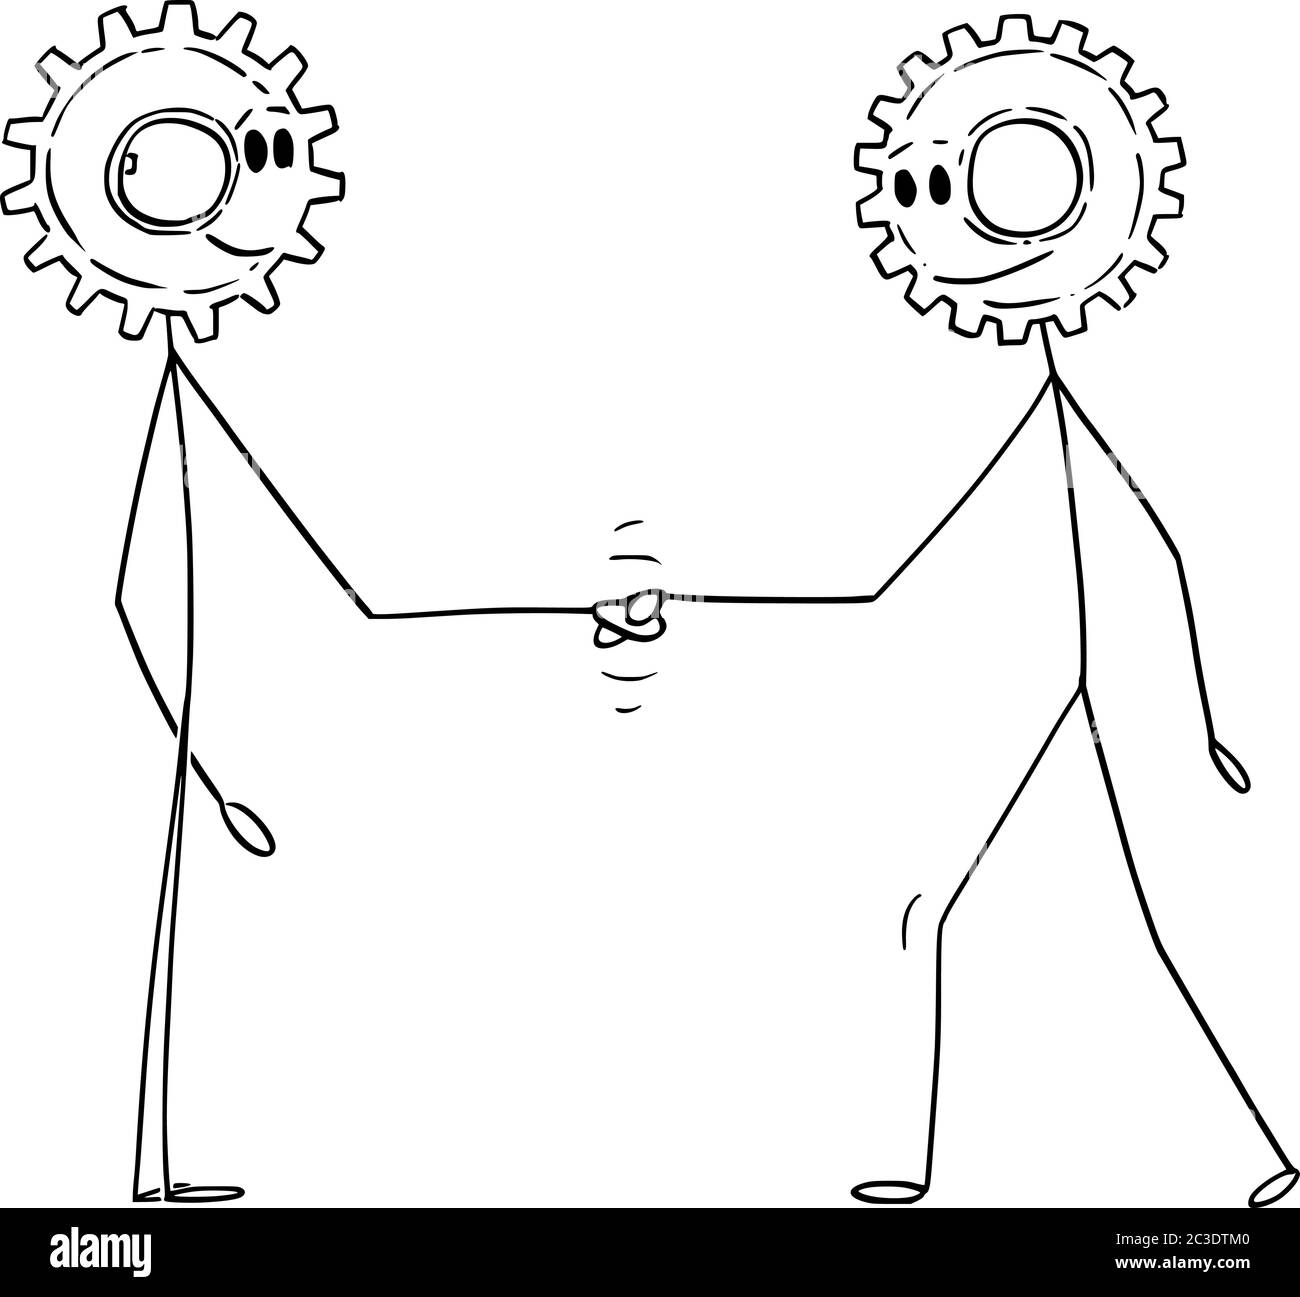 Vektor Cartoon Stick Figur Zeichnung konzeptionelle Illustration von zwei Männern oder Geschäftsleuten mit Zahnrad Köpfe Schütteln Hand. Geschäftskooperation oder Vertragskonzept. Stock Vektor